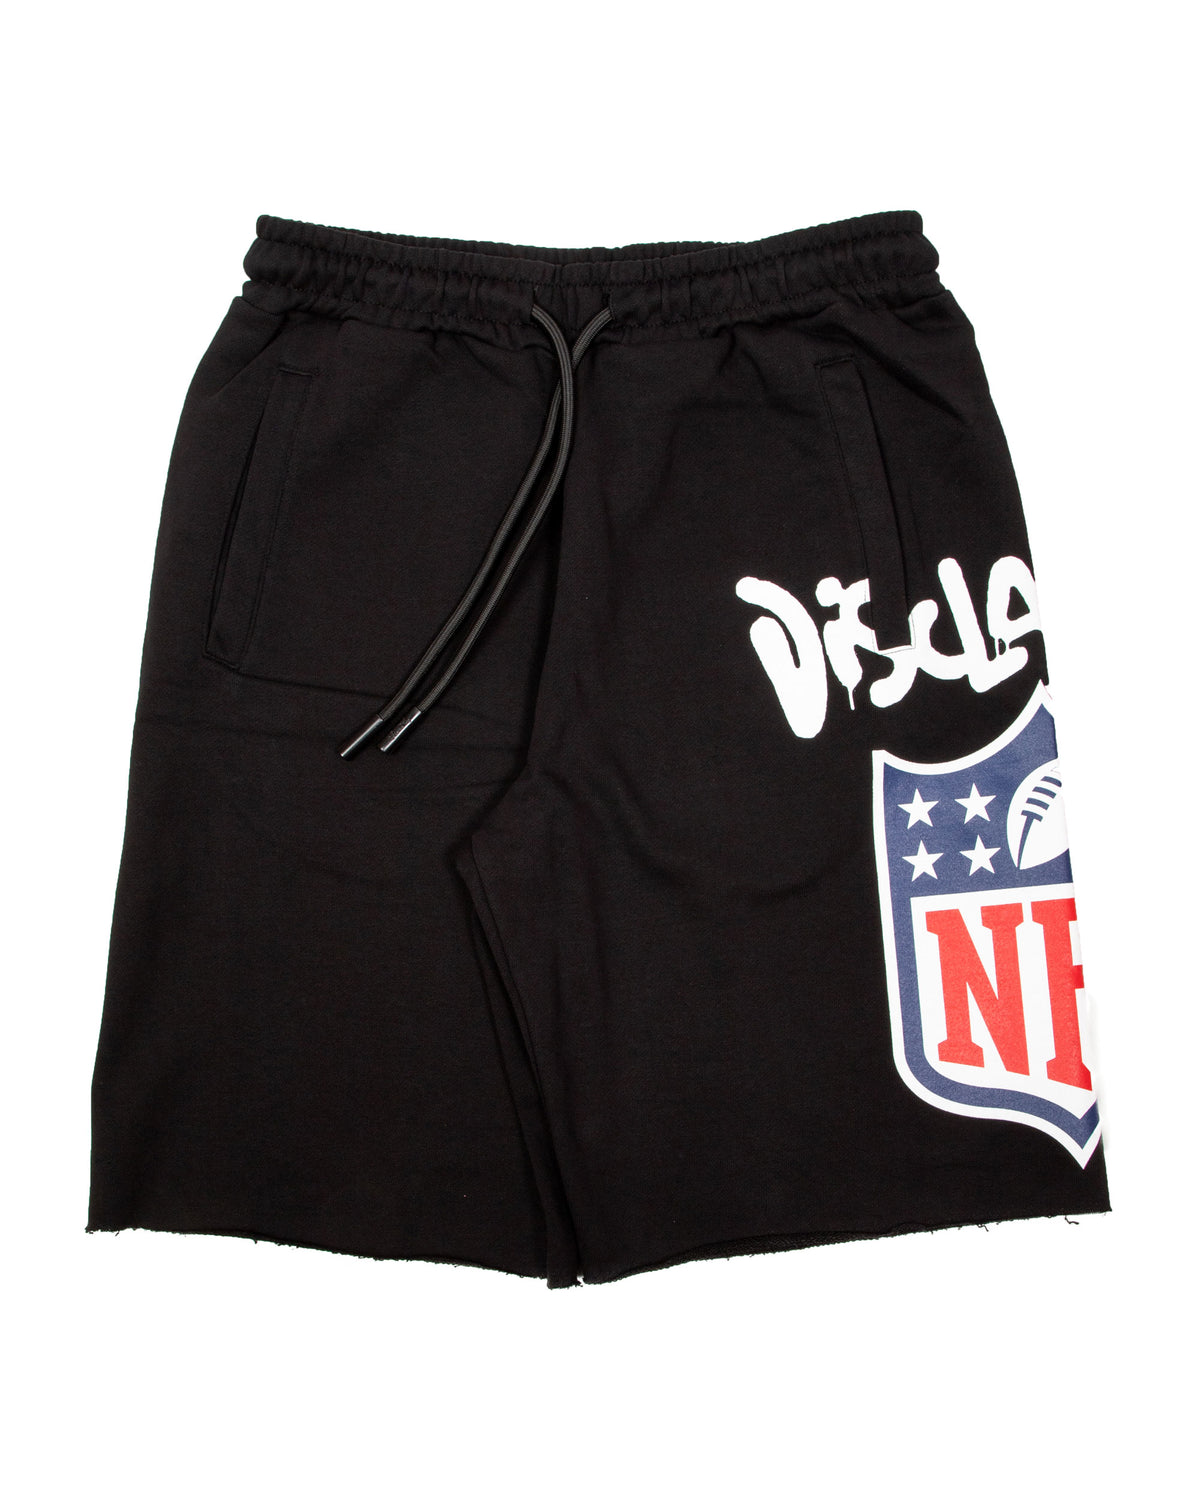 NFL Short 22ENF53005-Black